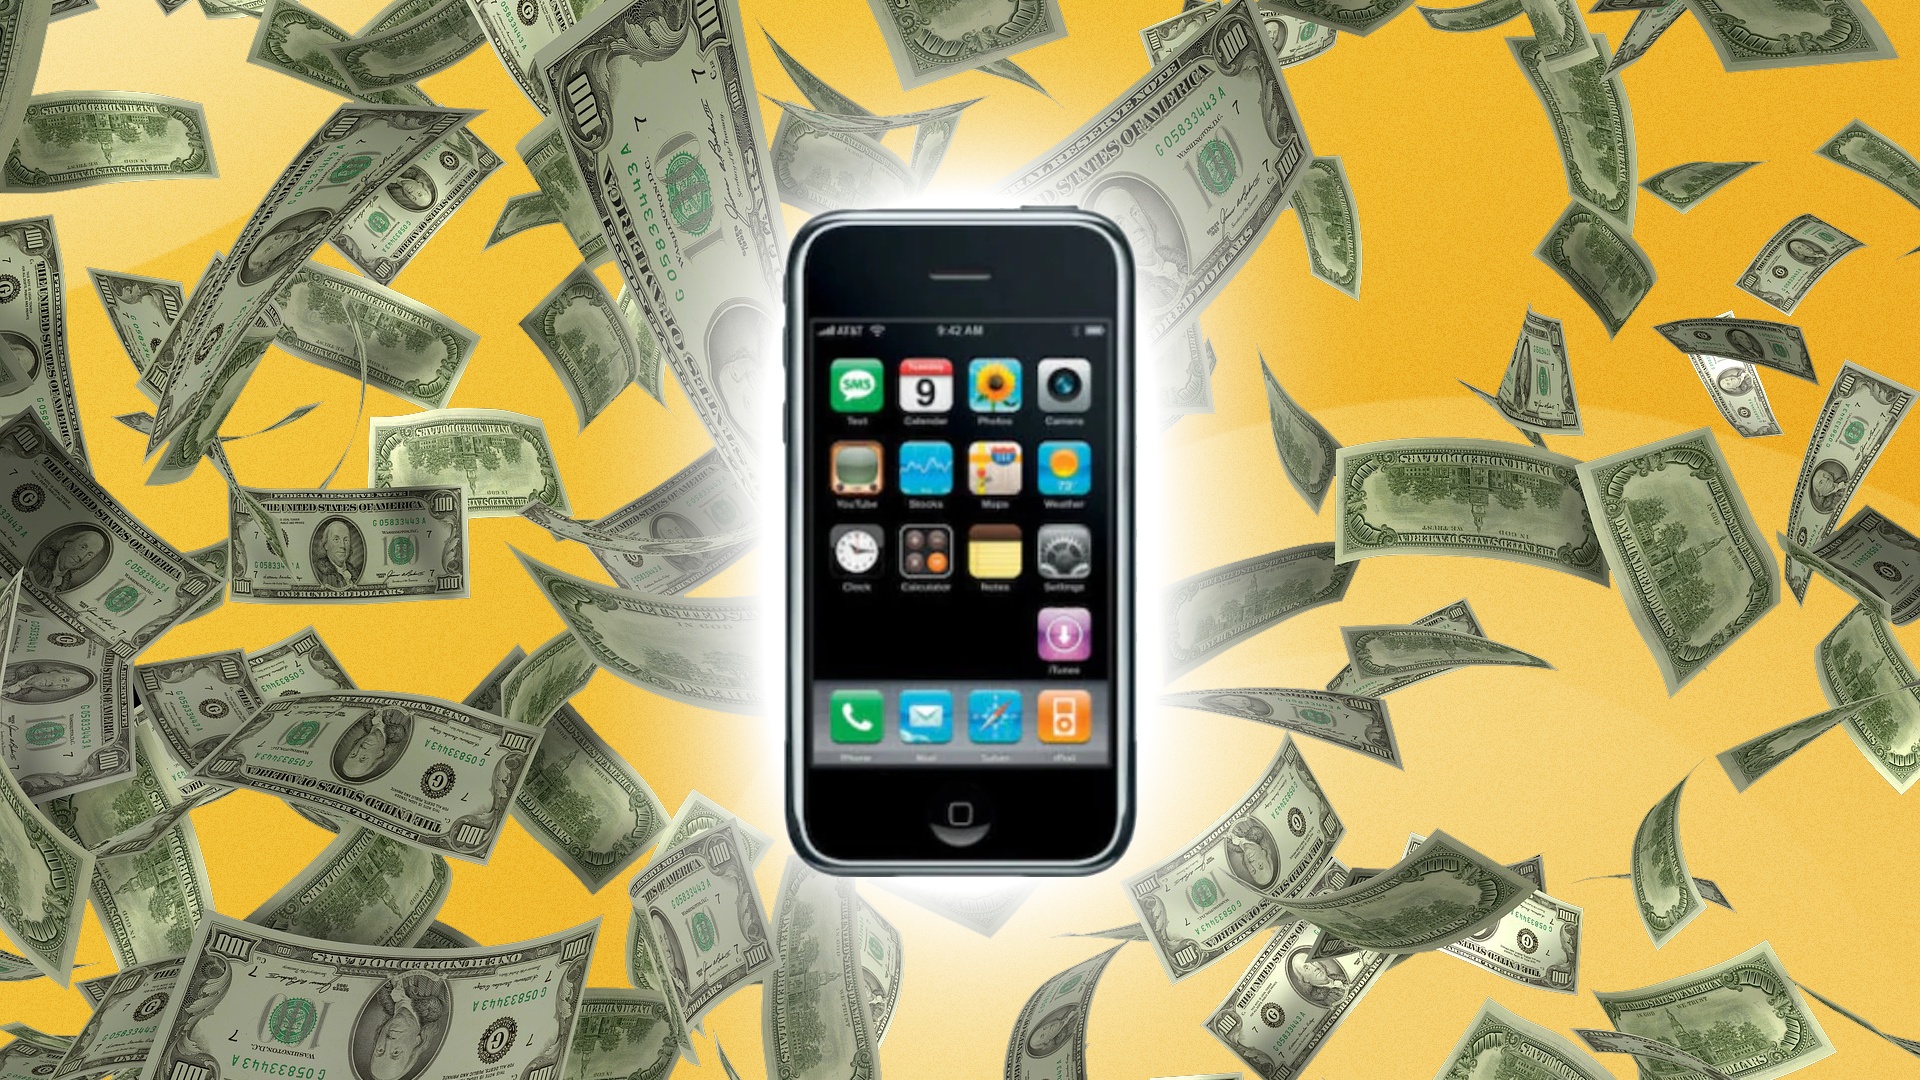 #Vergessener Schatz: Erstes iPhone erzielt 10.000 Prozent seines Originalpreises